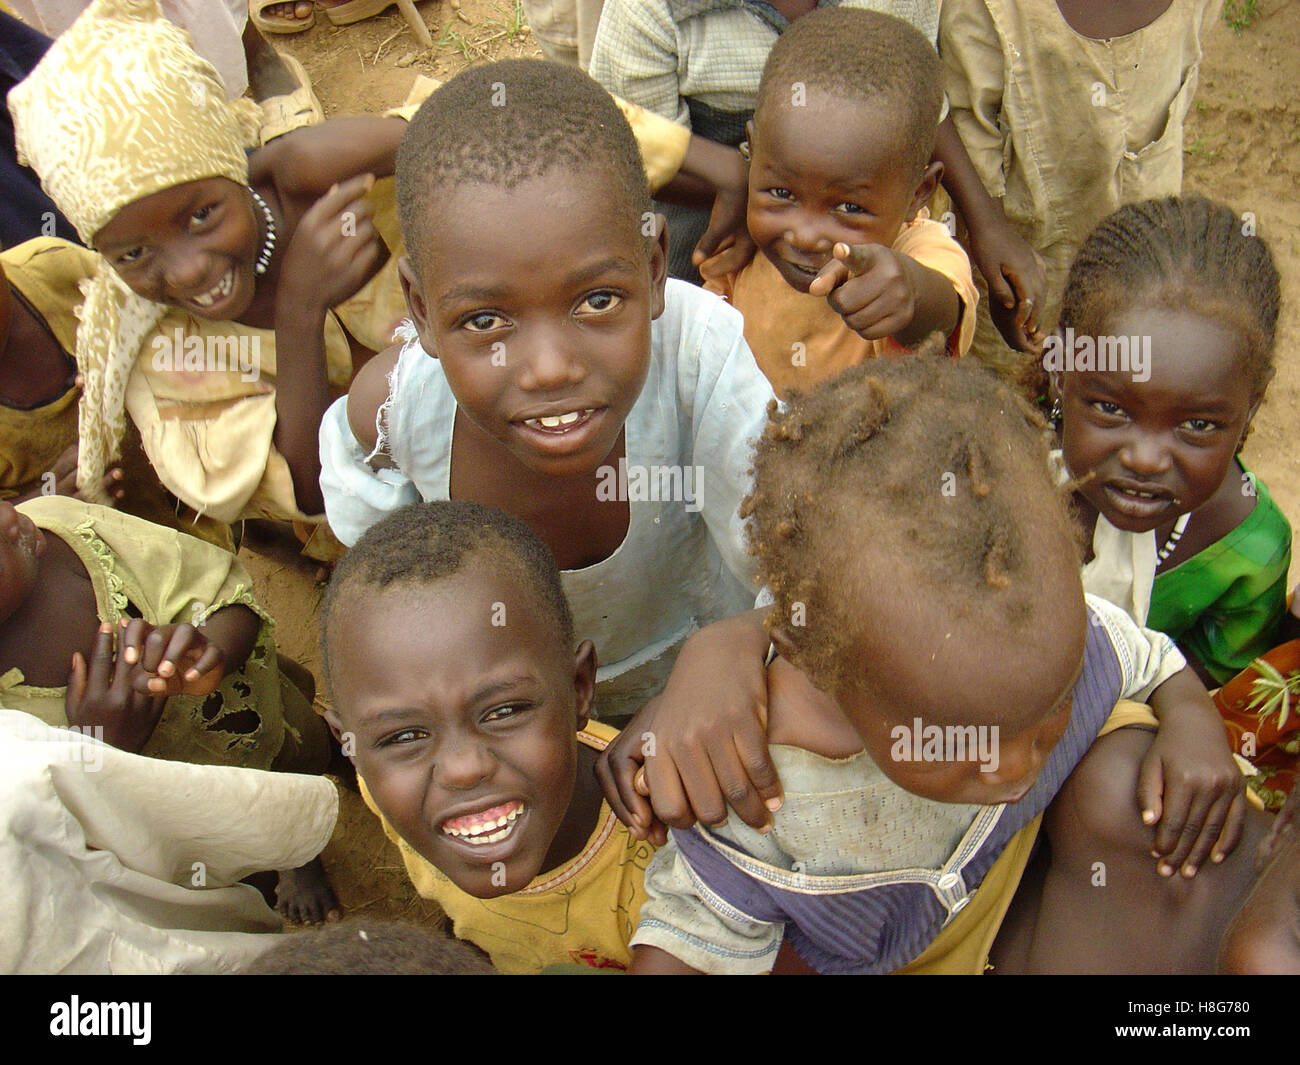 7 Septembre 2005 Les enfants réfugiés dans le Hassa Hissa IDP (personnes déplacées) camp à Zalingei, Darfour, Soudan. Banque D'Images